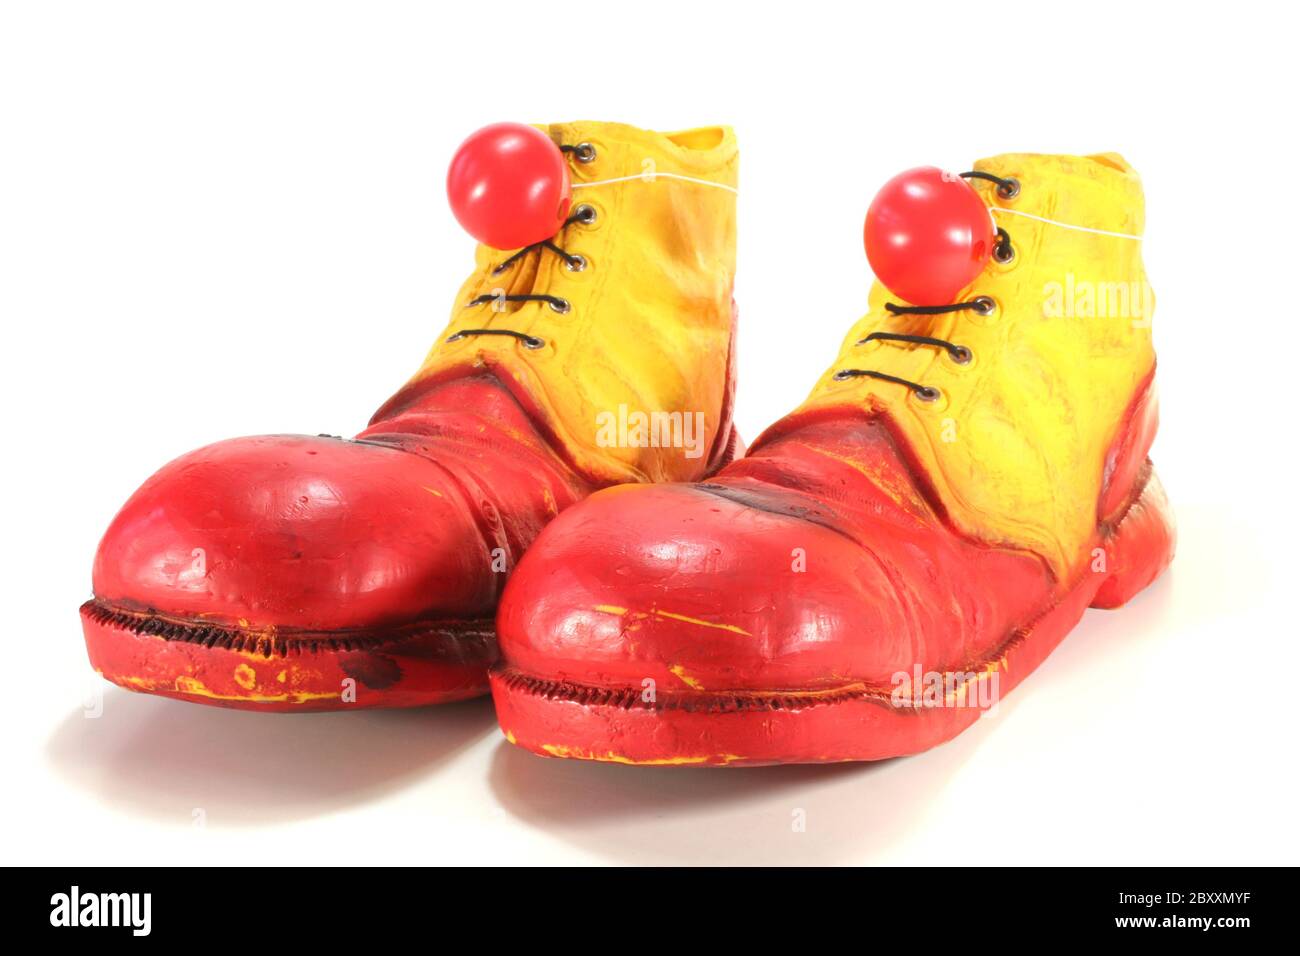 Los zapatos de payaso rojos y amarillos brillantes roban el espectáculo